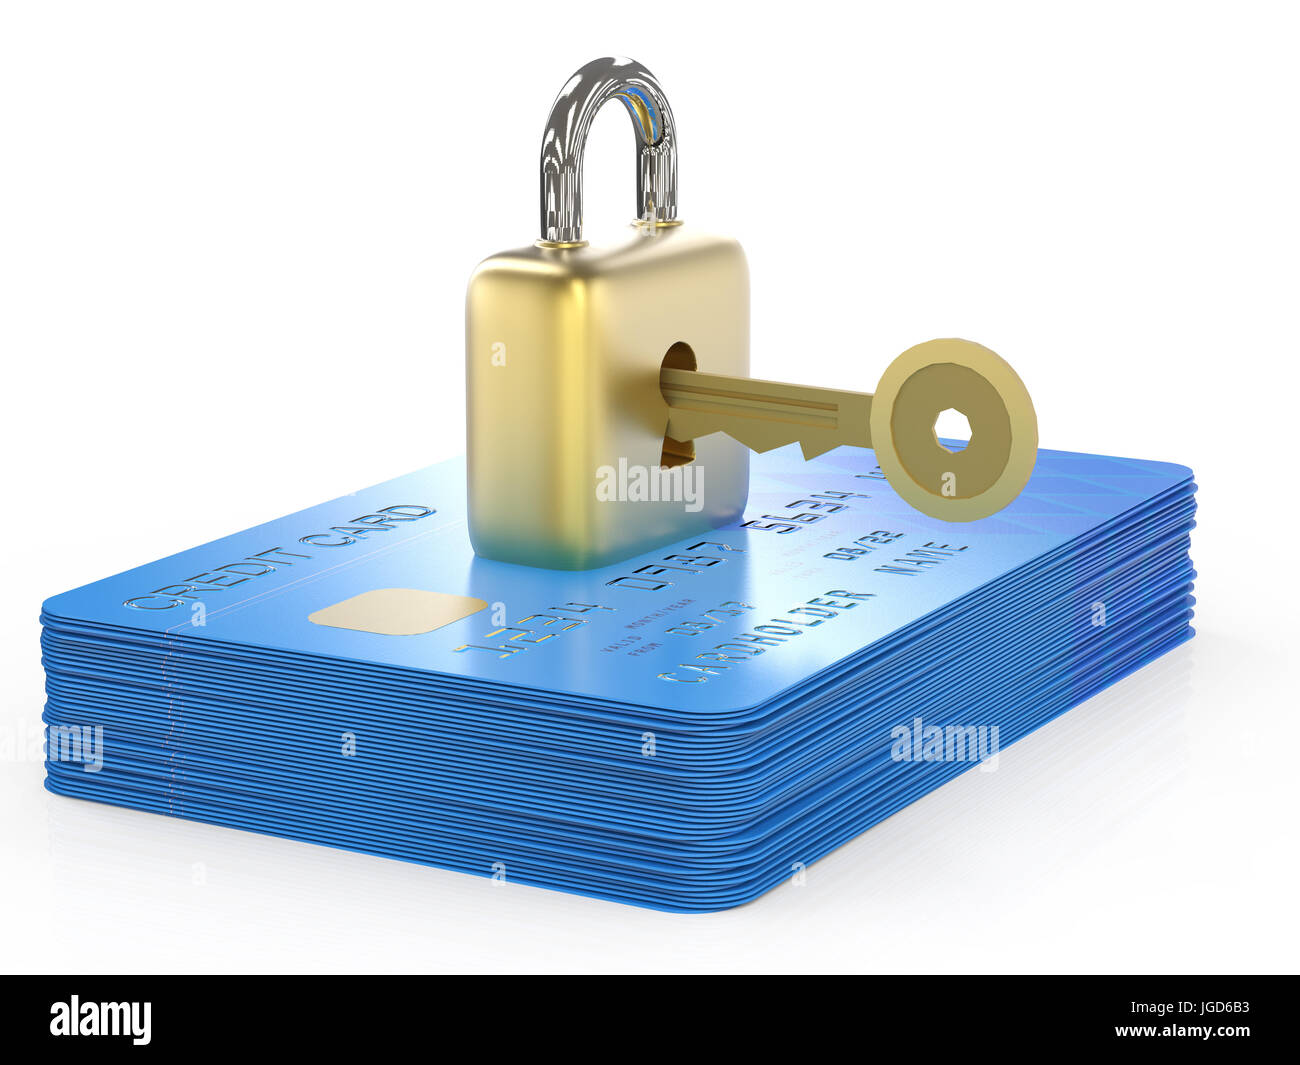 Concepto de cifrado de datos de tarjetas de crédito con 3D rendering tarjetas de crédito con candado y llave Foto de stock